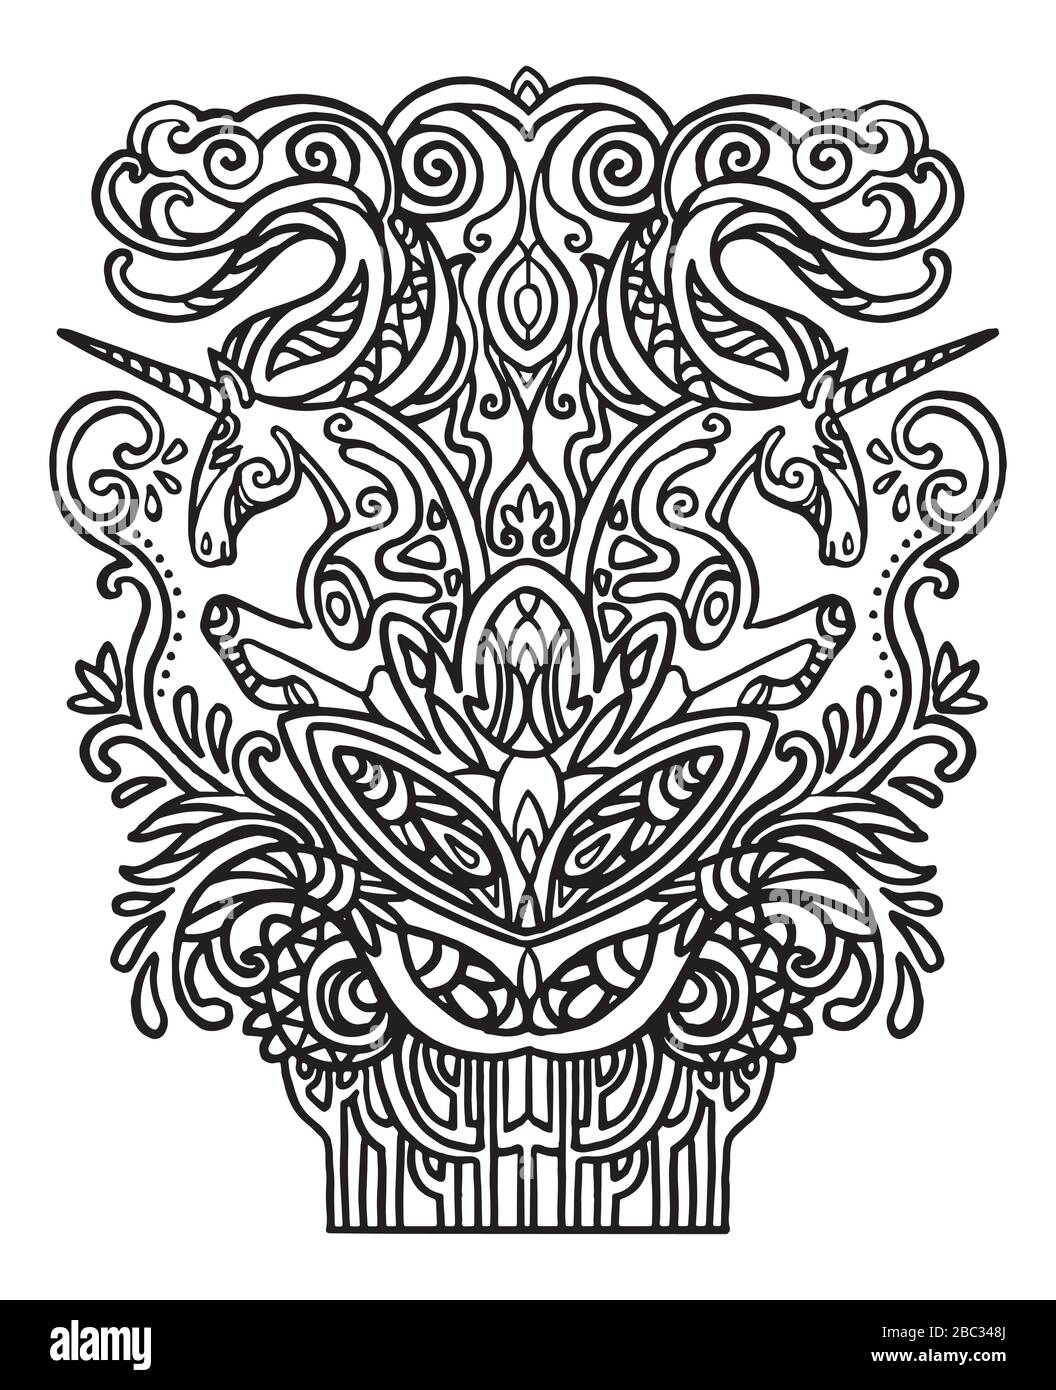 Vecteur zentangle doodle coloriage antistress avec couple de unicornes isolés sur fond blanc. Illustration pour décorer le tee-shirt, la papeterie, l'adu Illustration de Vecteur